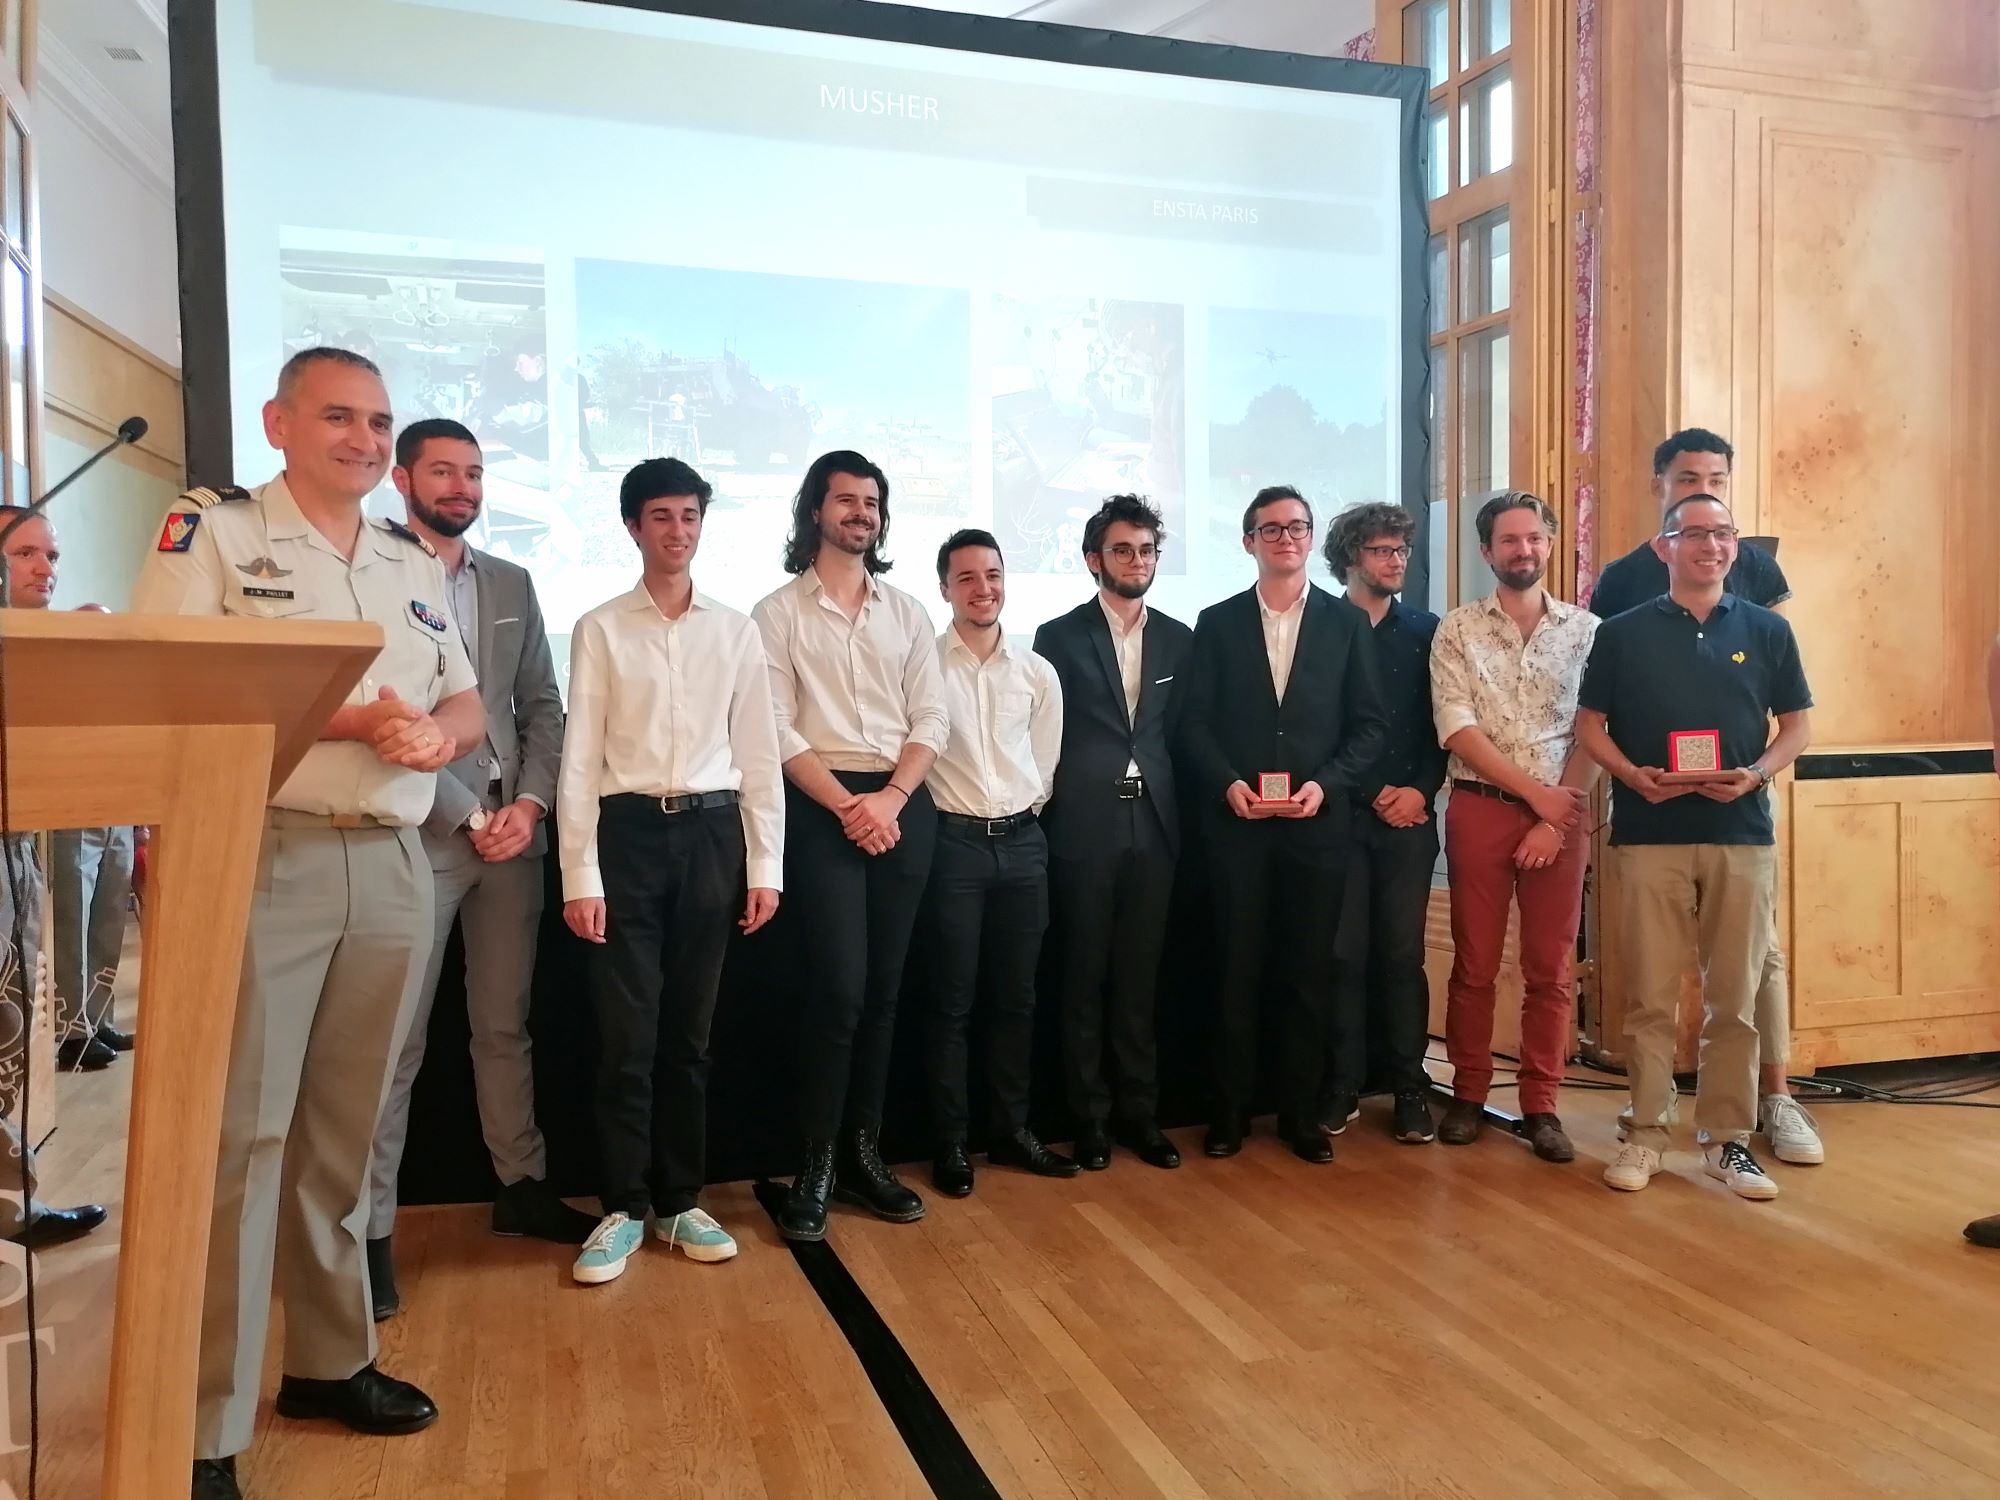 L'équipe d'ENSTA Paris recevant le prix de la préparation tactique suite à sa participation au deuxième challenge CoHoMa